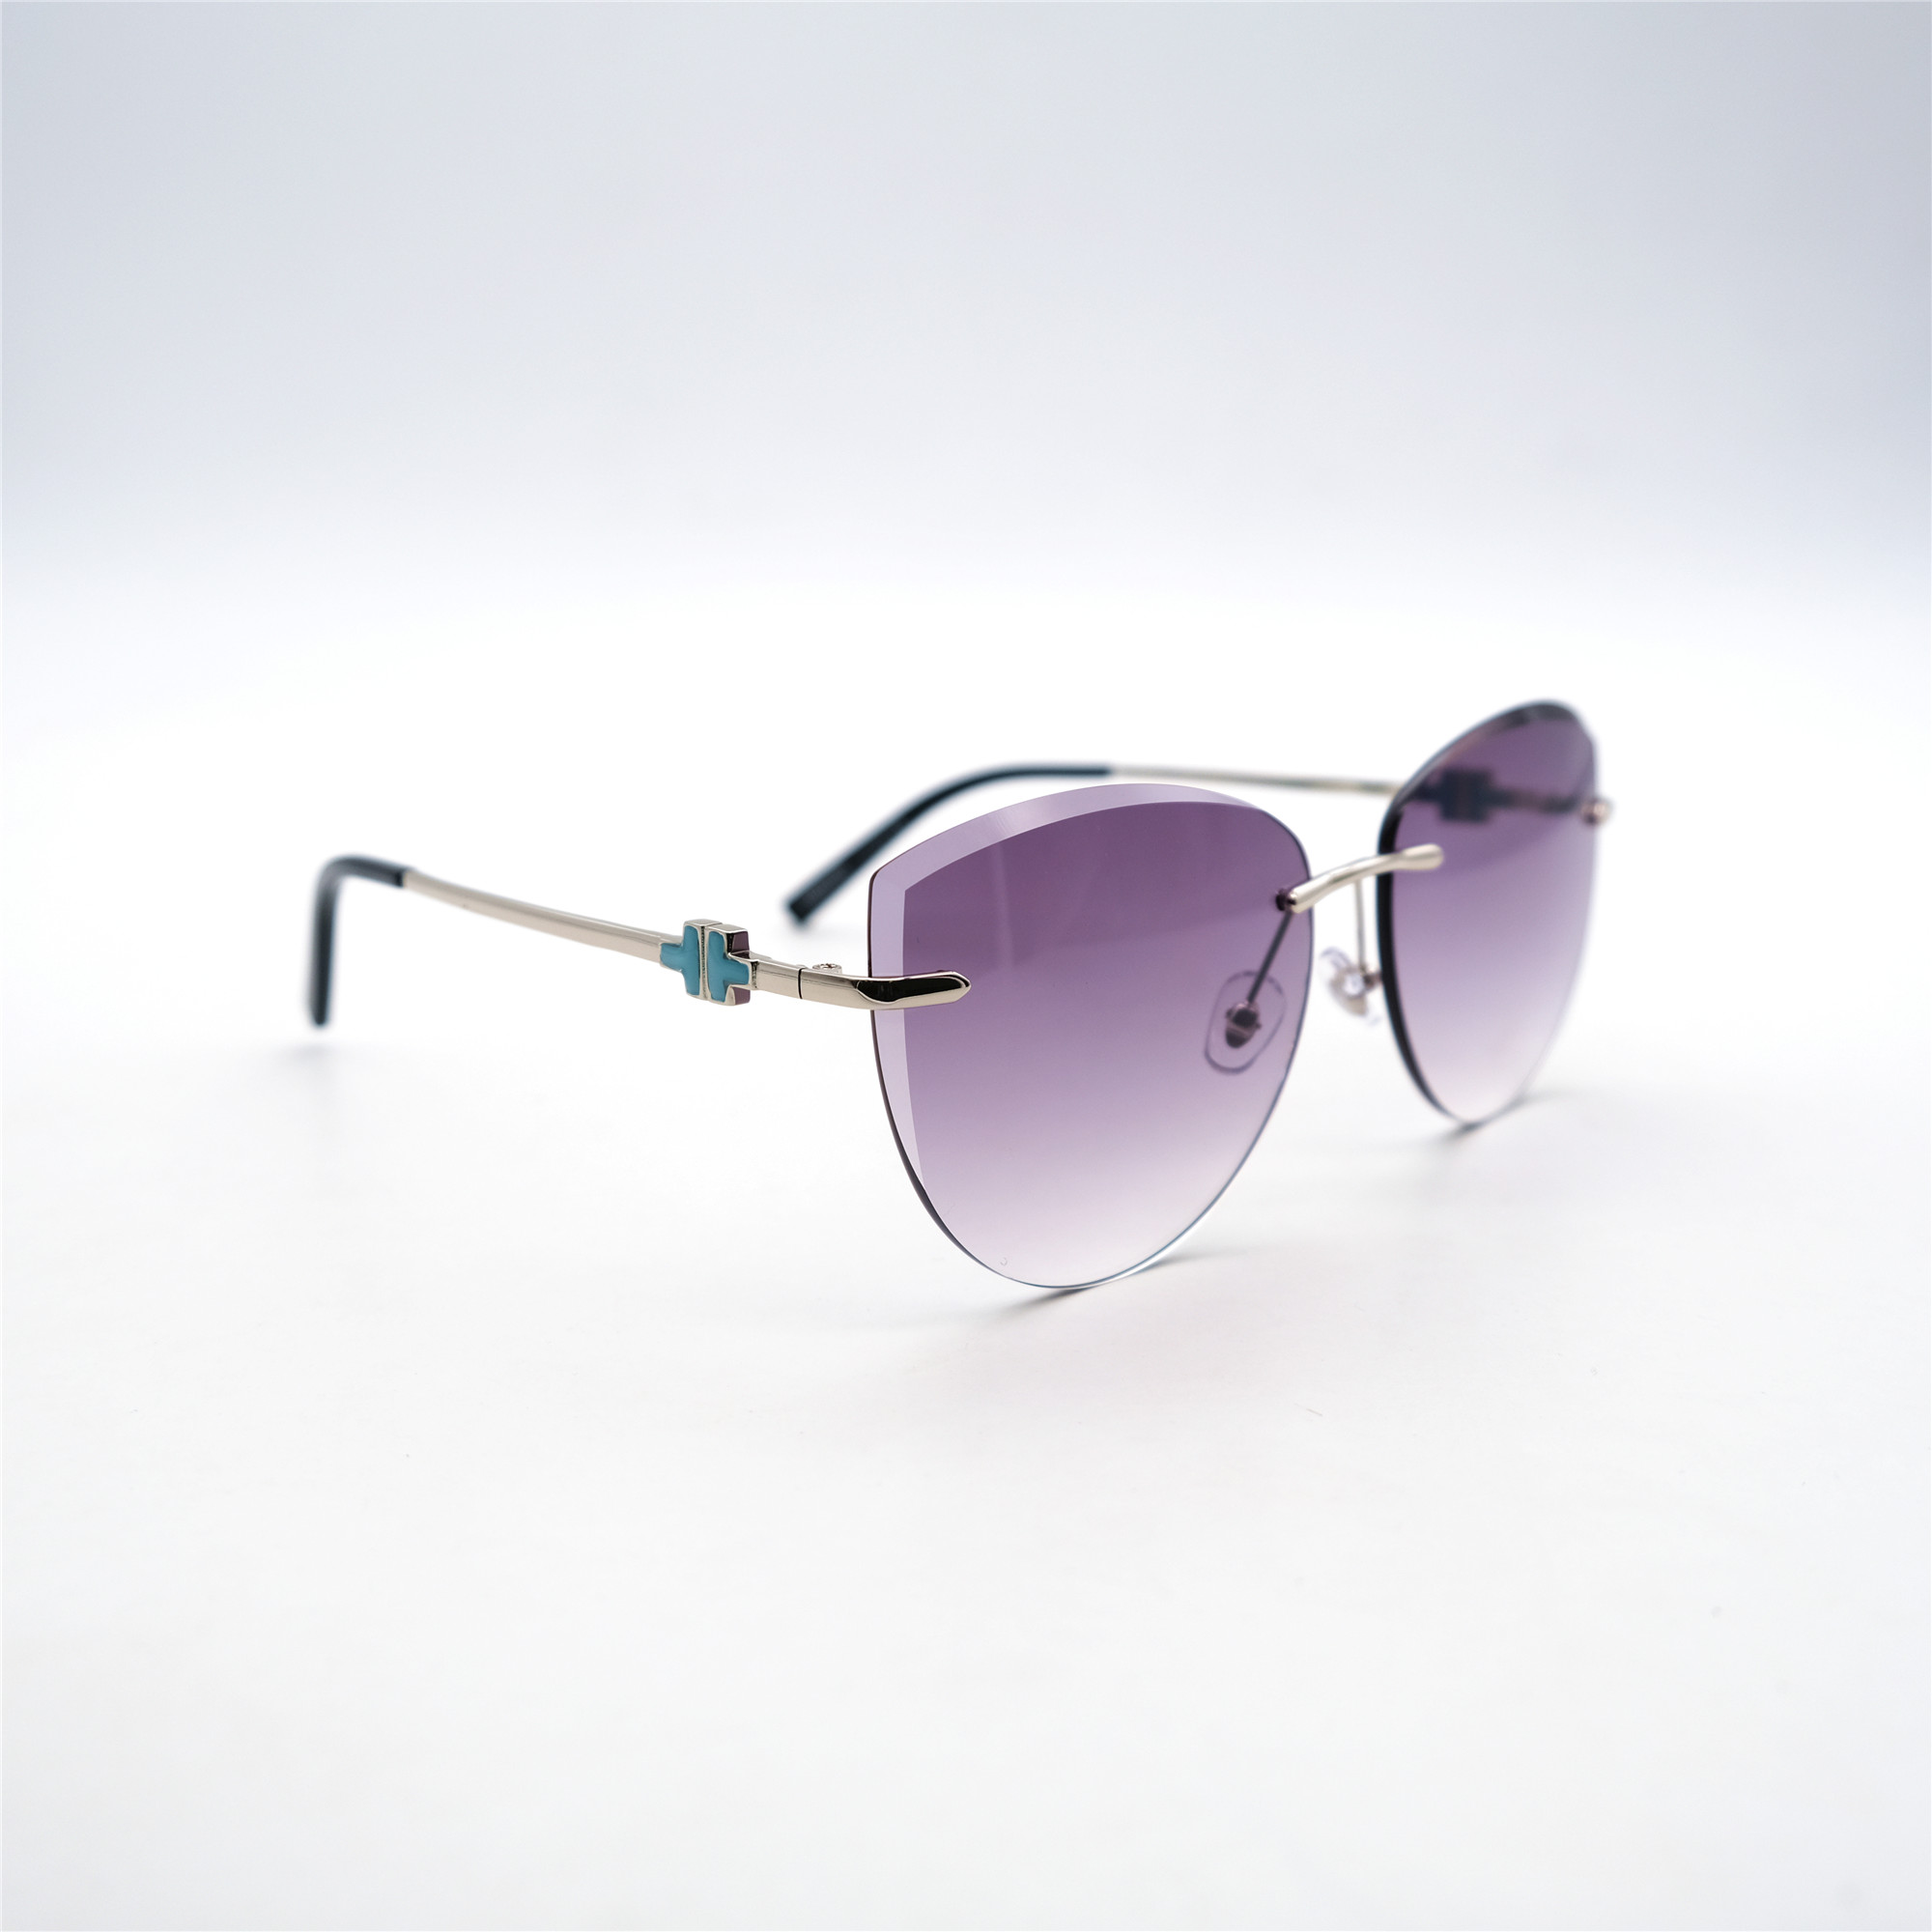  Солнцезащитные очки картинка Женские Yamanni  Авиаторы D2503-C7-16 